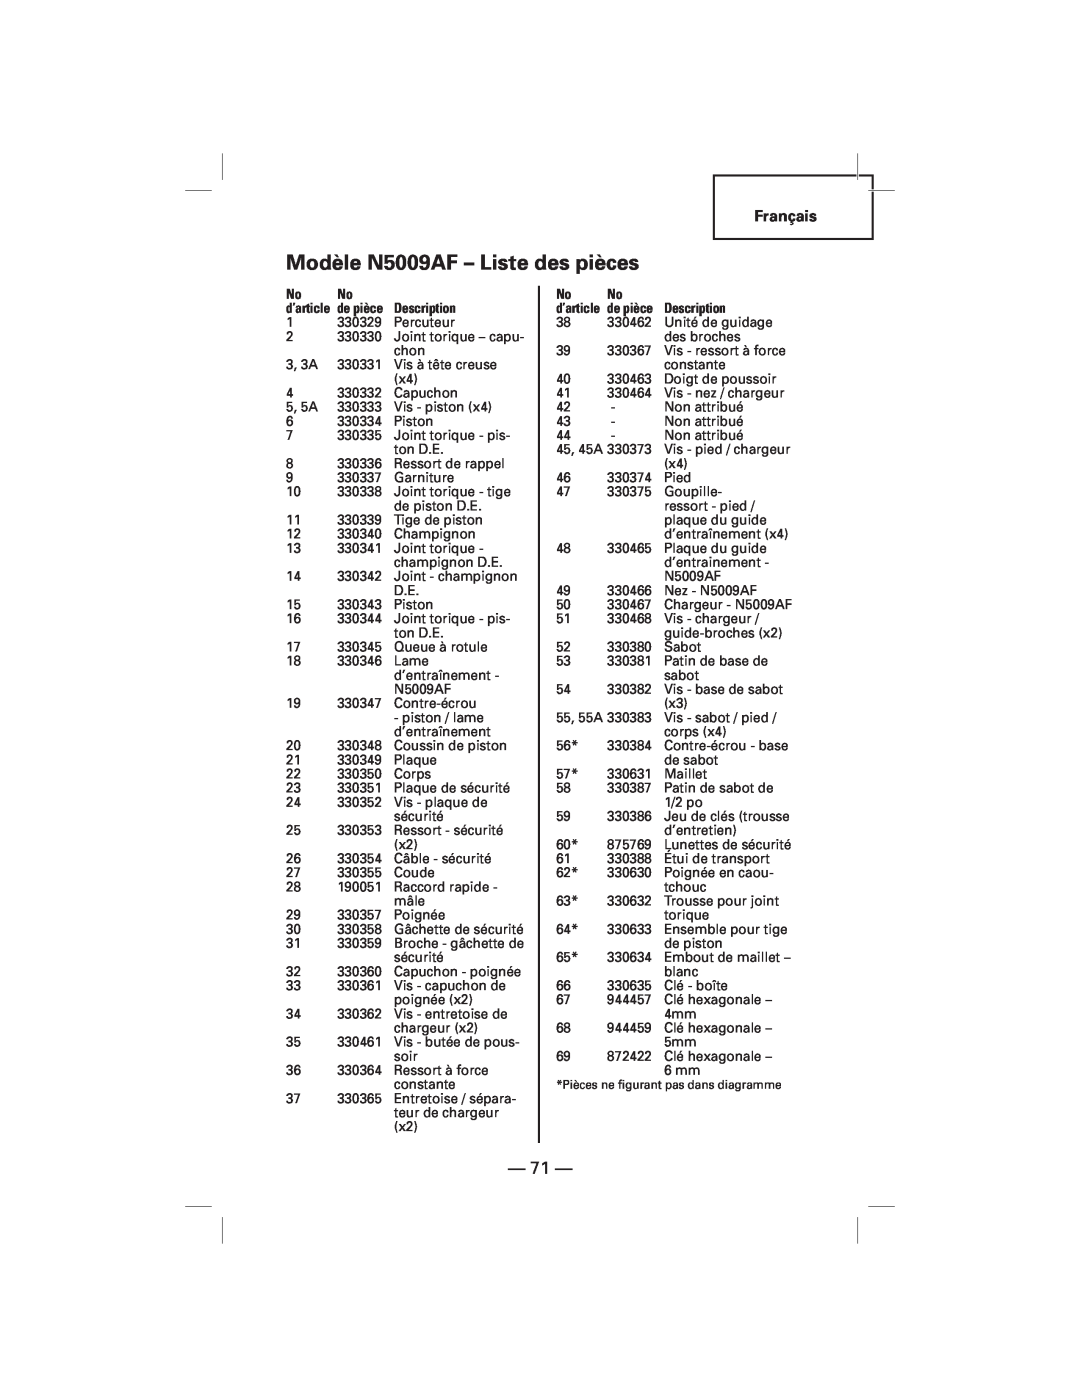 Hitachi NT50AF manual Modèle N5009AF - Liste des pièces 